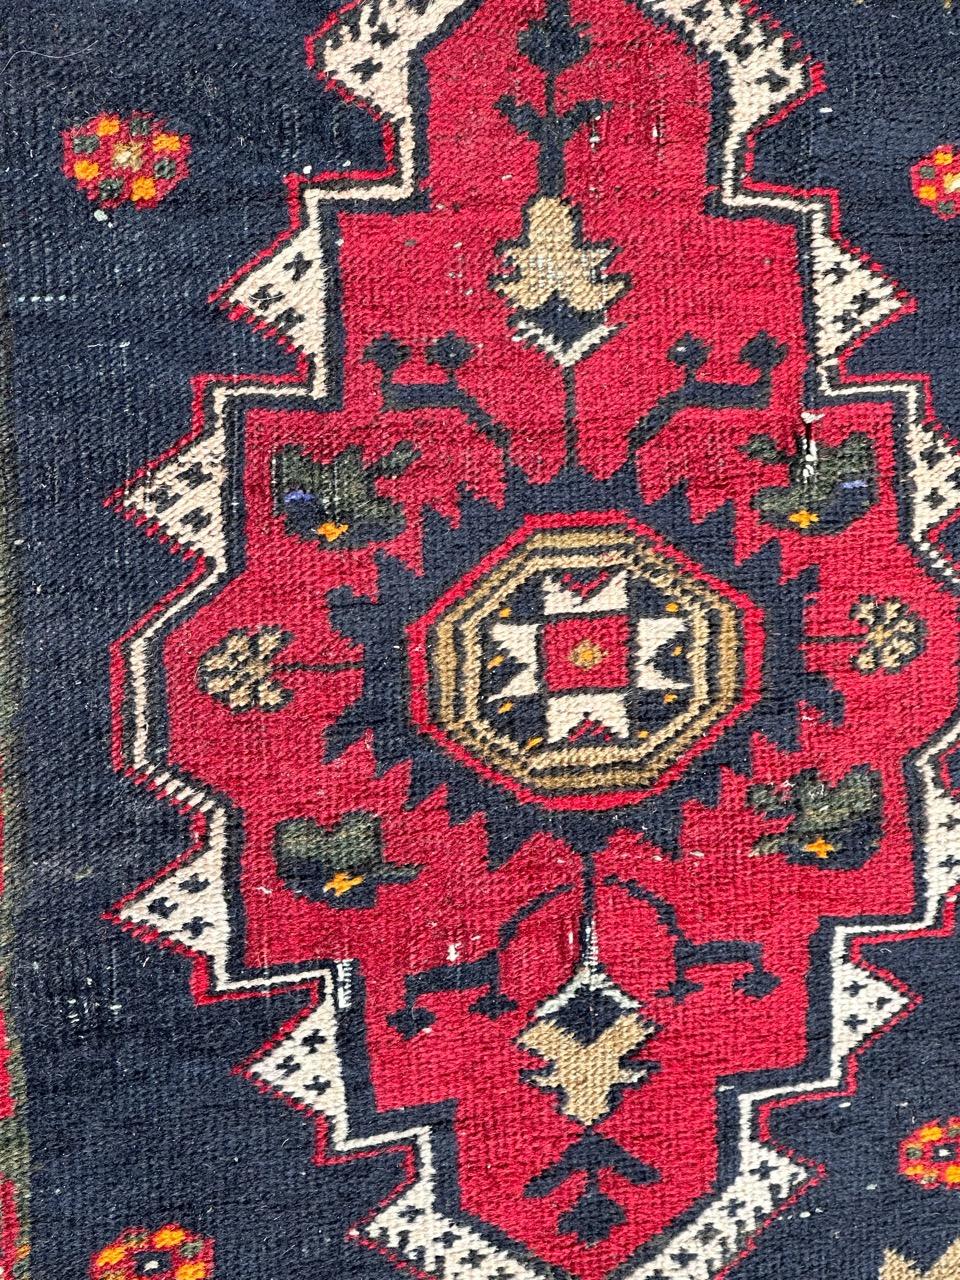 Joli tapis turc Yastik du milieu du siècle avec de beaux motifs géométriques et de belles couleurs avec du rouge, du bleu foncé, de l'orange, du vert, du noir et du blanc, entièrement noué à la main avec de la laine sur une base de coton. Quelques